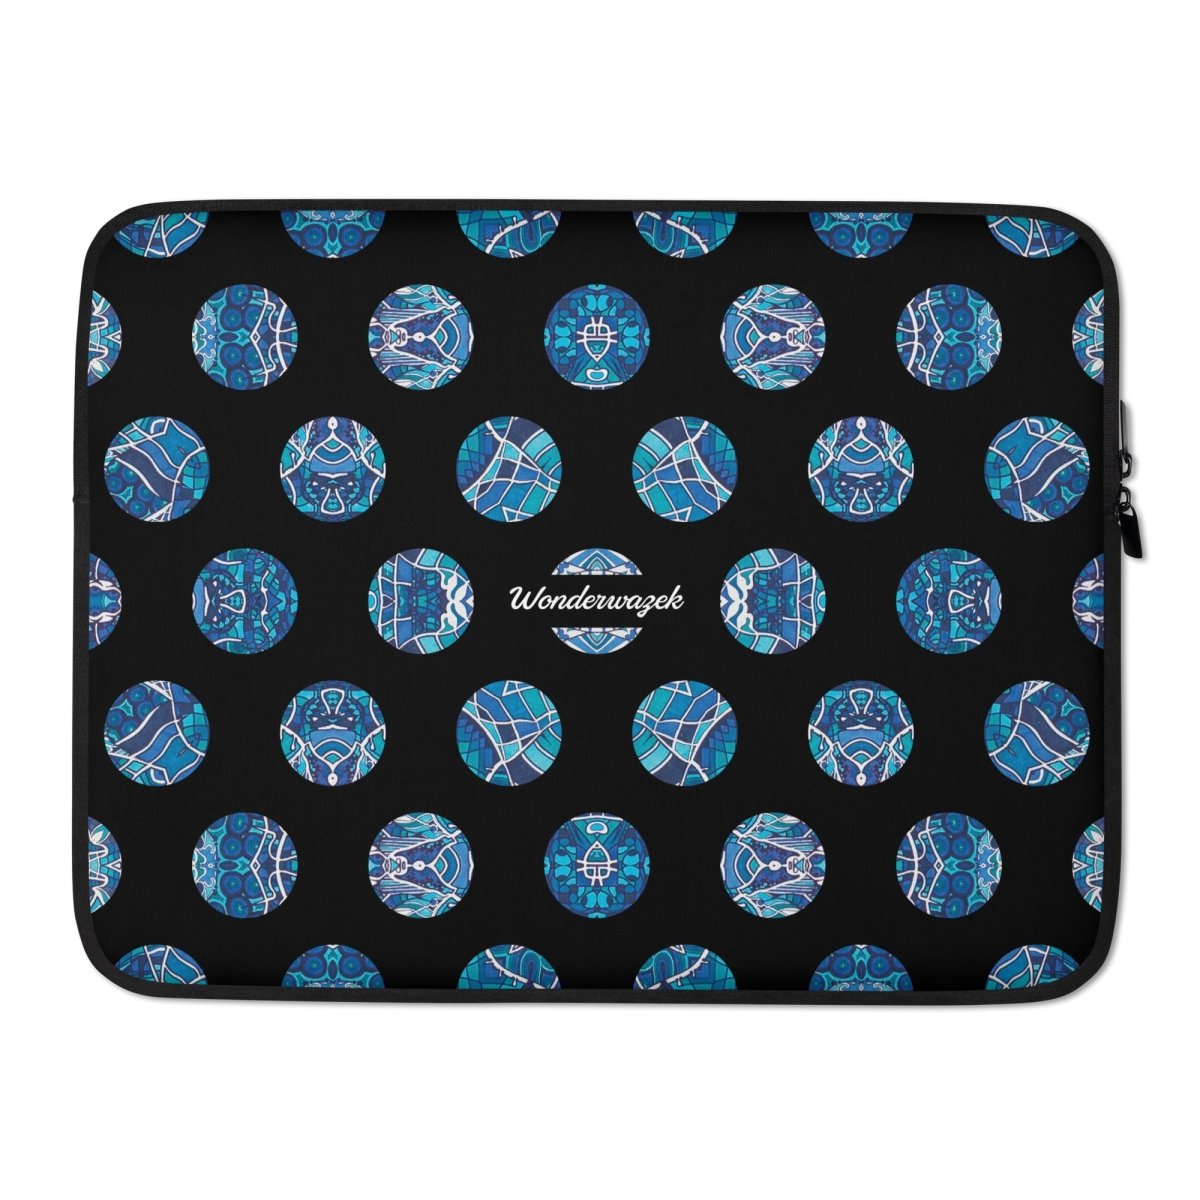 Laptoptasche • Wassergeister – Punkte, blau, schwarz, weiß - Wonderwazek